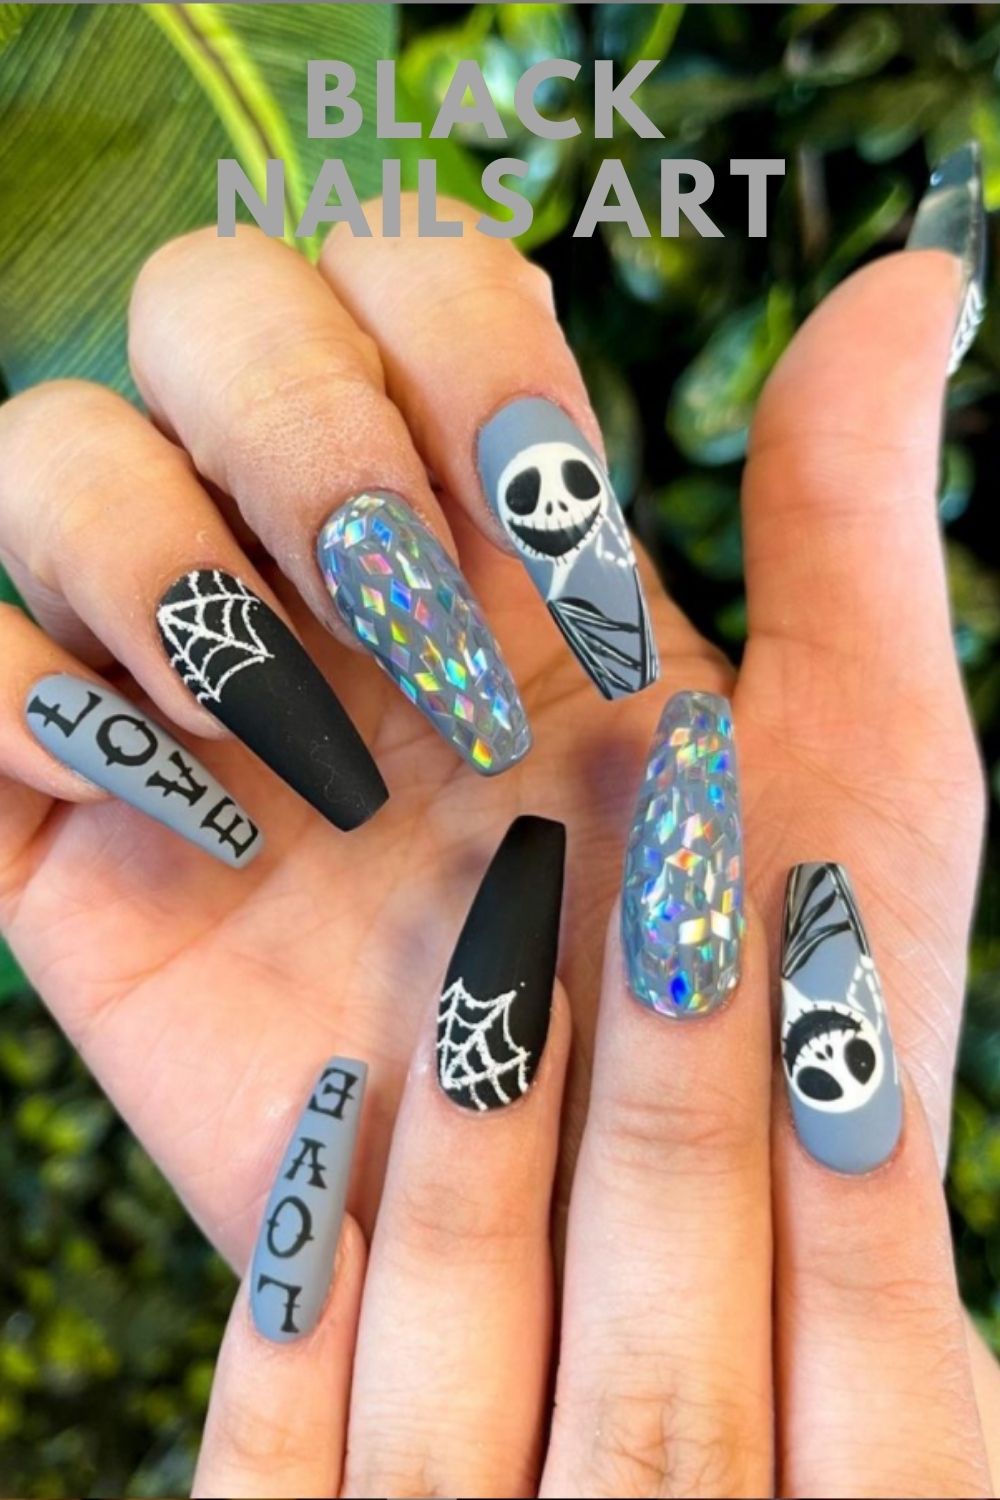 Gray and black nail design